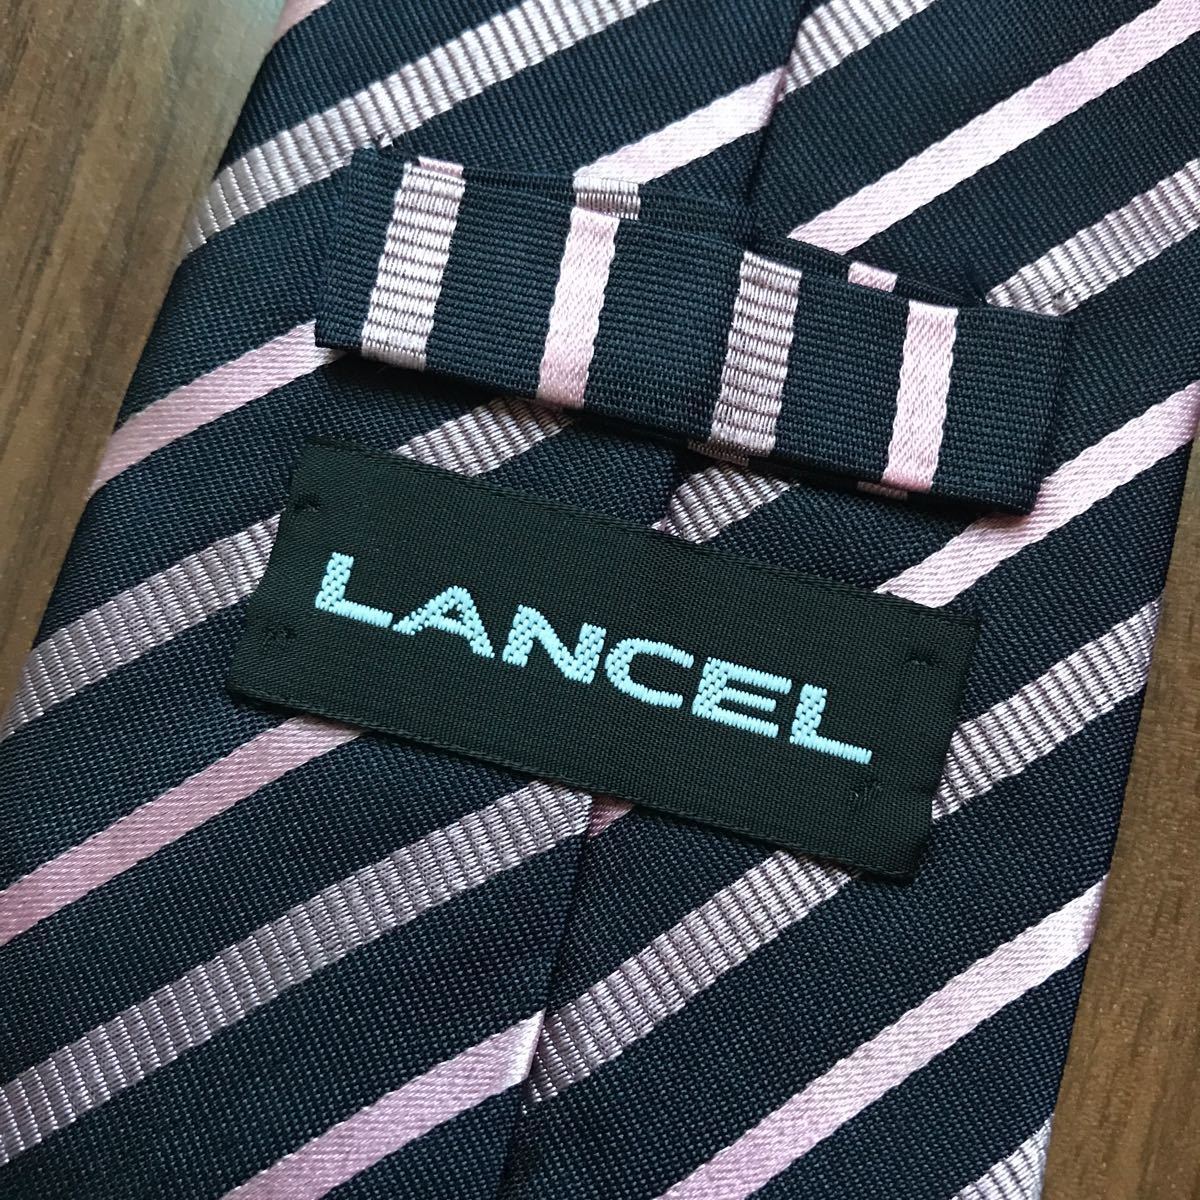 LANCEL Lancel necktie navy pink stripe 